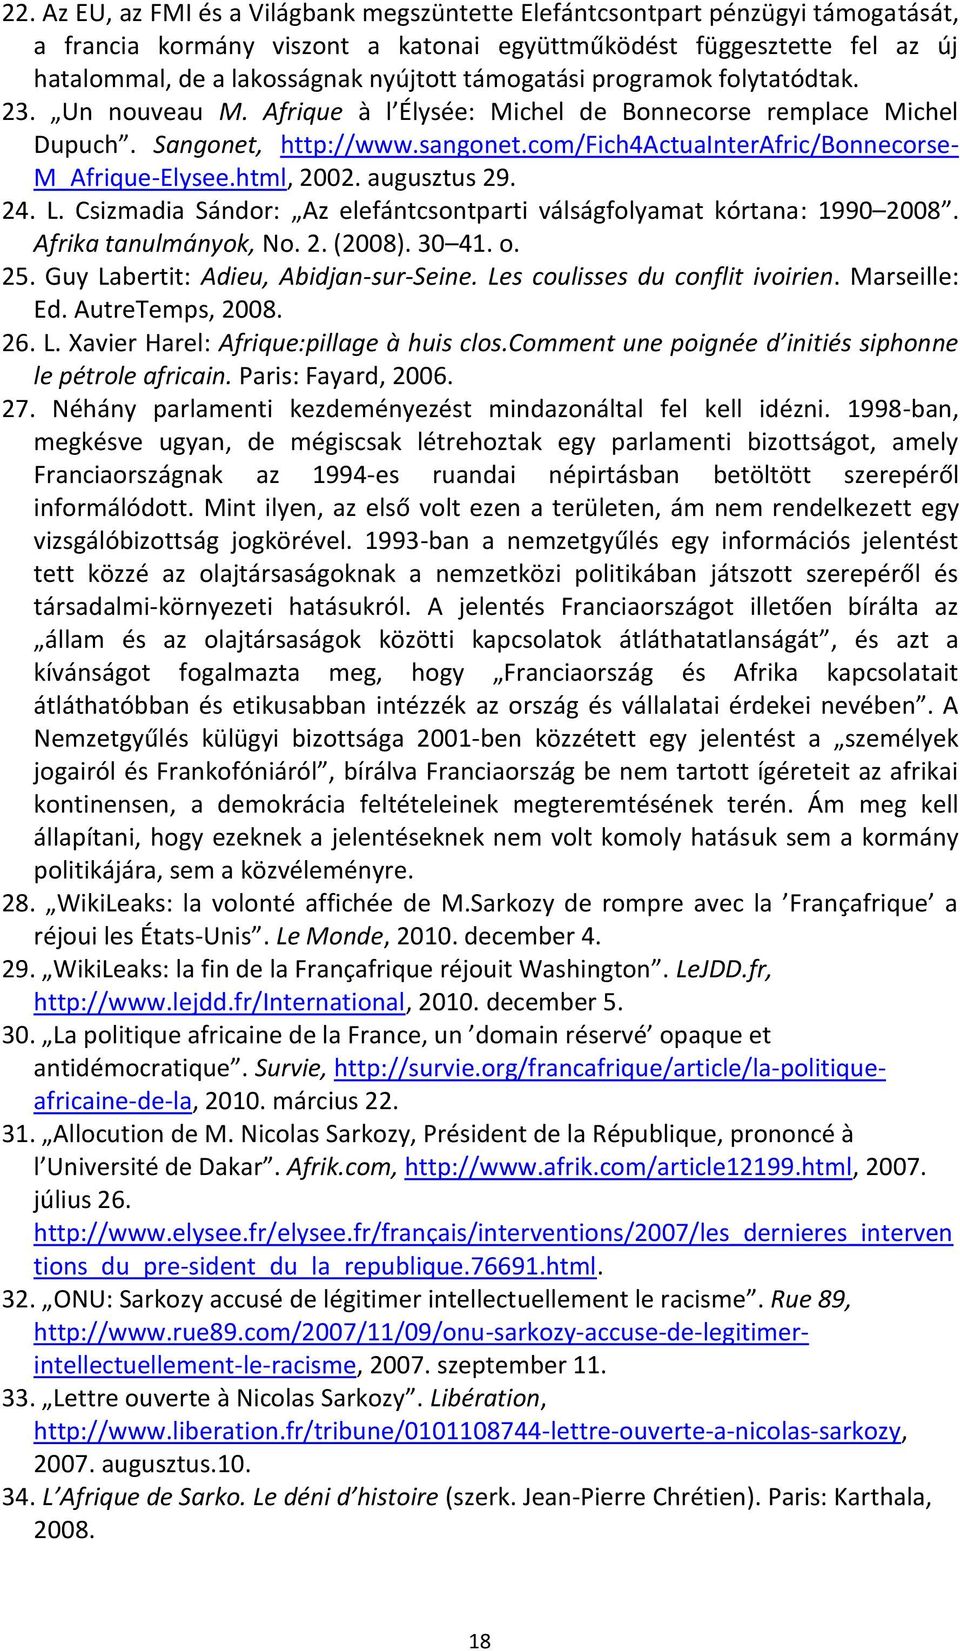 com/fich4actuainterafric/bonnecorse- M_Afrique-Elysee.html, 2002. augusztus 29. 24. L. Csizmadia Sándor: Az elefántcsontparti válságfolyamat kórtana: 1990 2008. Afrika tanulmányok, No. 2. (2008).